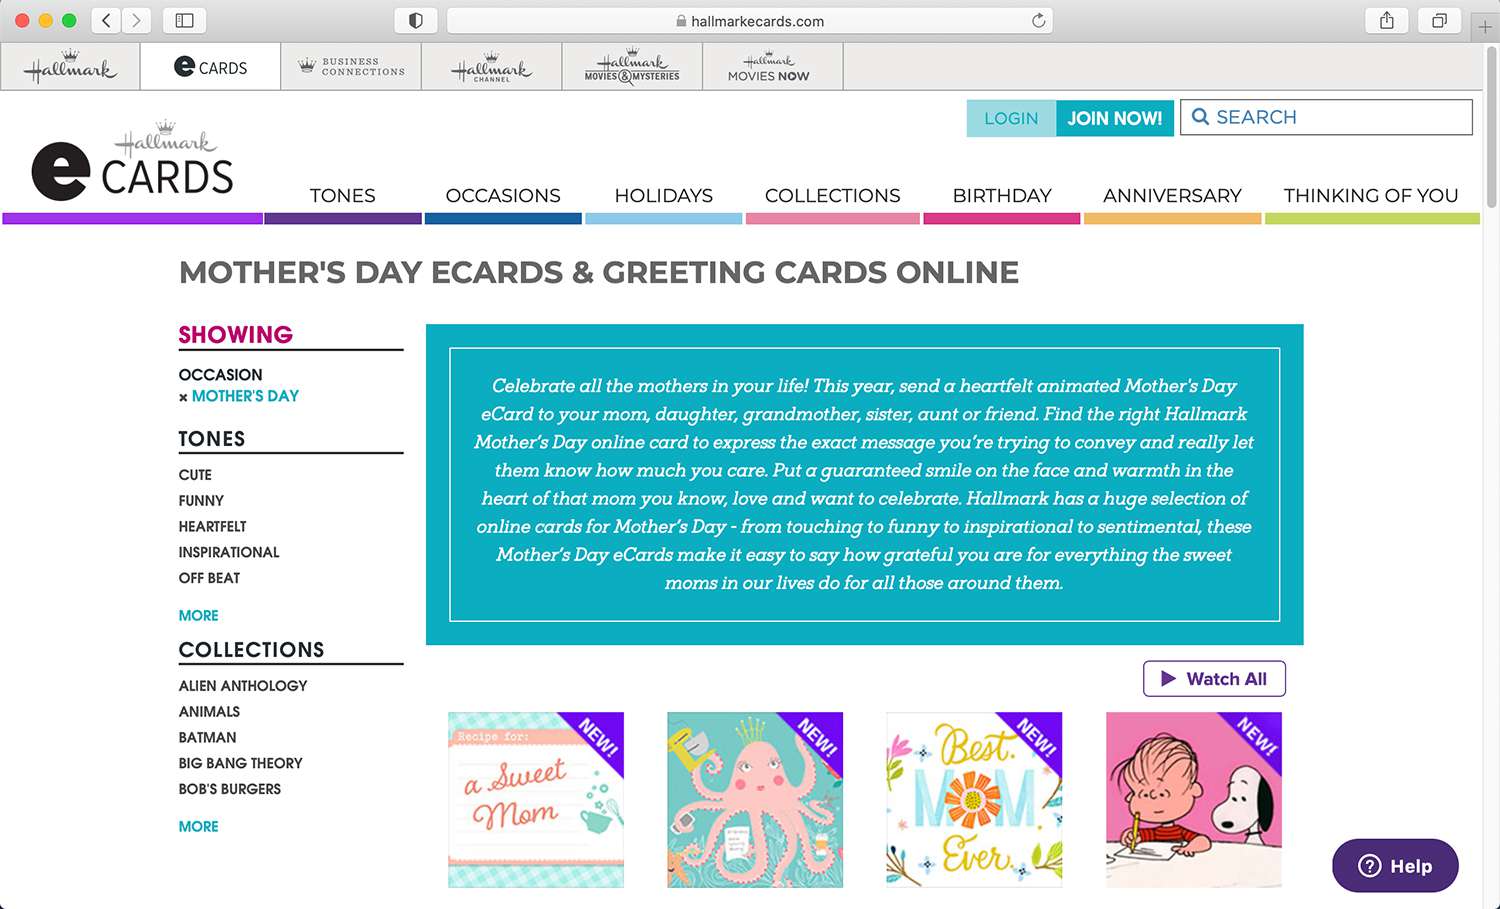 Stránka s charakteristickými e-kartami pro různé svátky a příležitosti